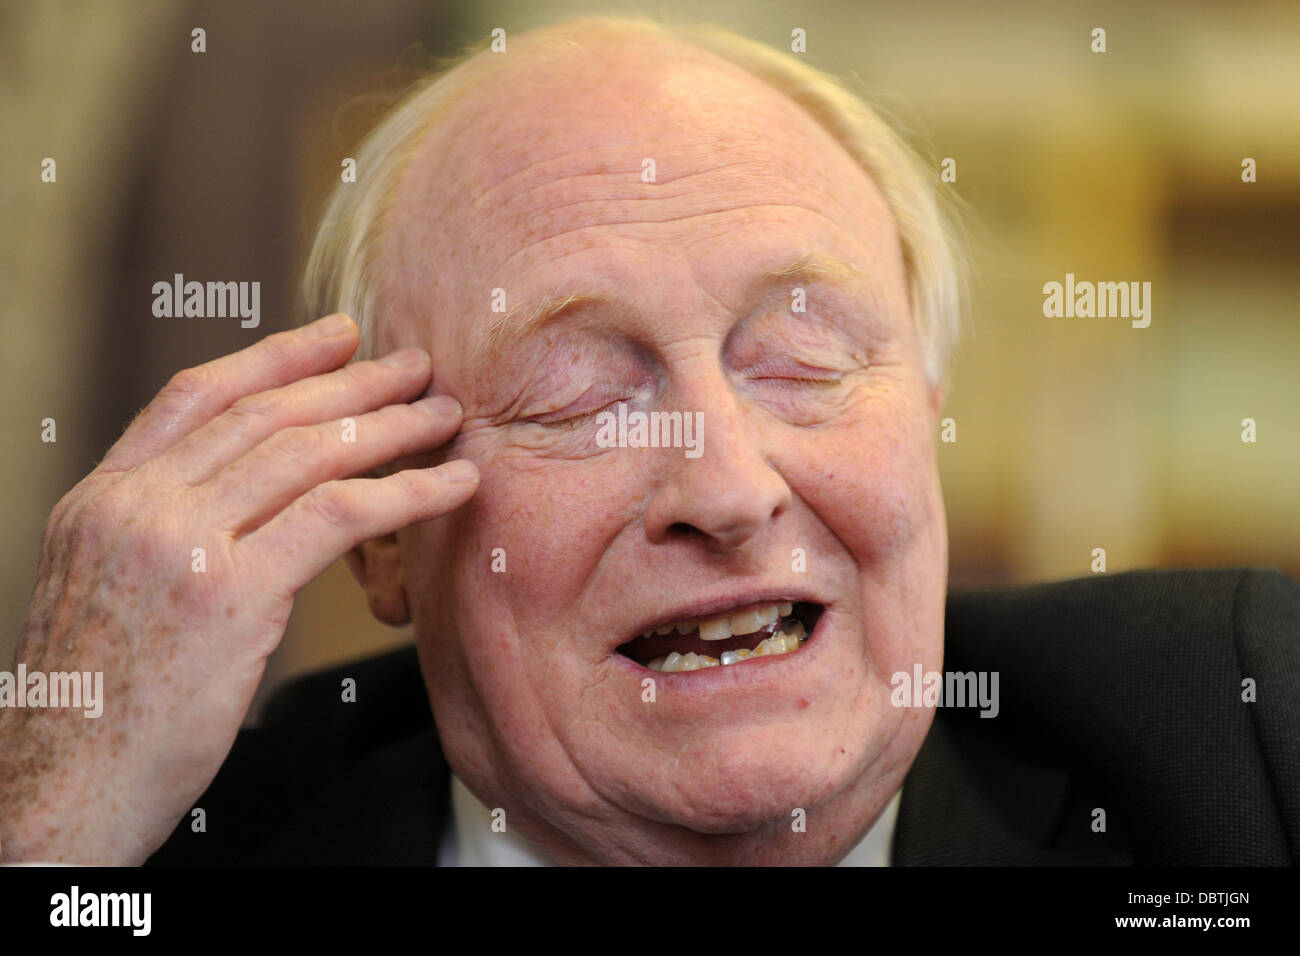 Former Labour leader Neil Kinnock. Stock Photo